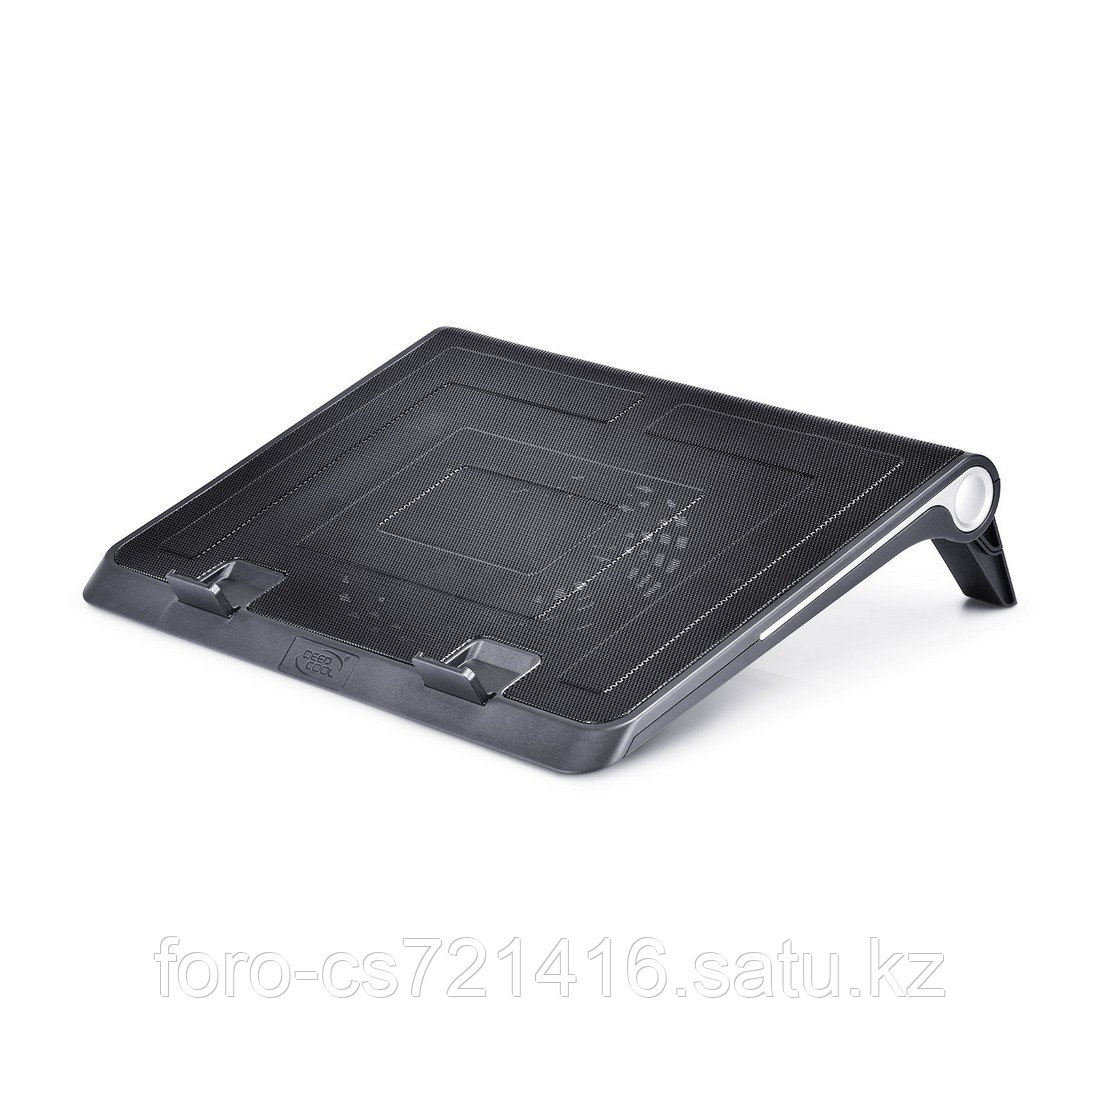 Охлаждающая подставка для ноутбука Deepcool N180 FS 17", фото 1